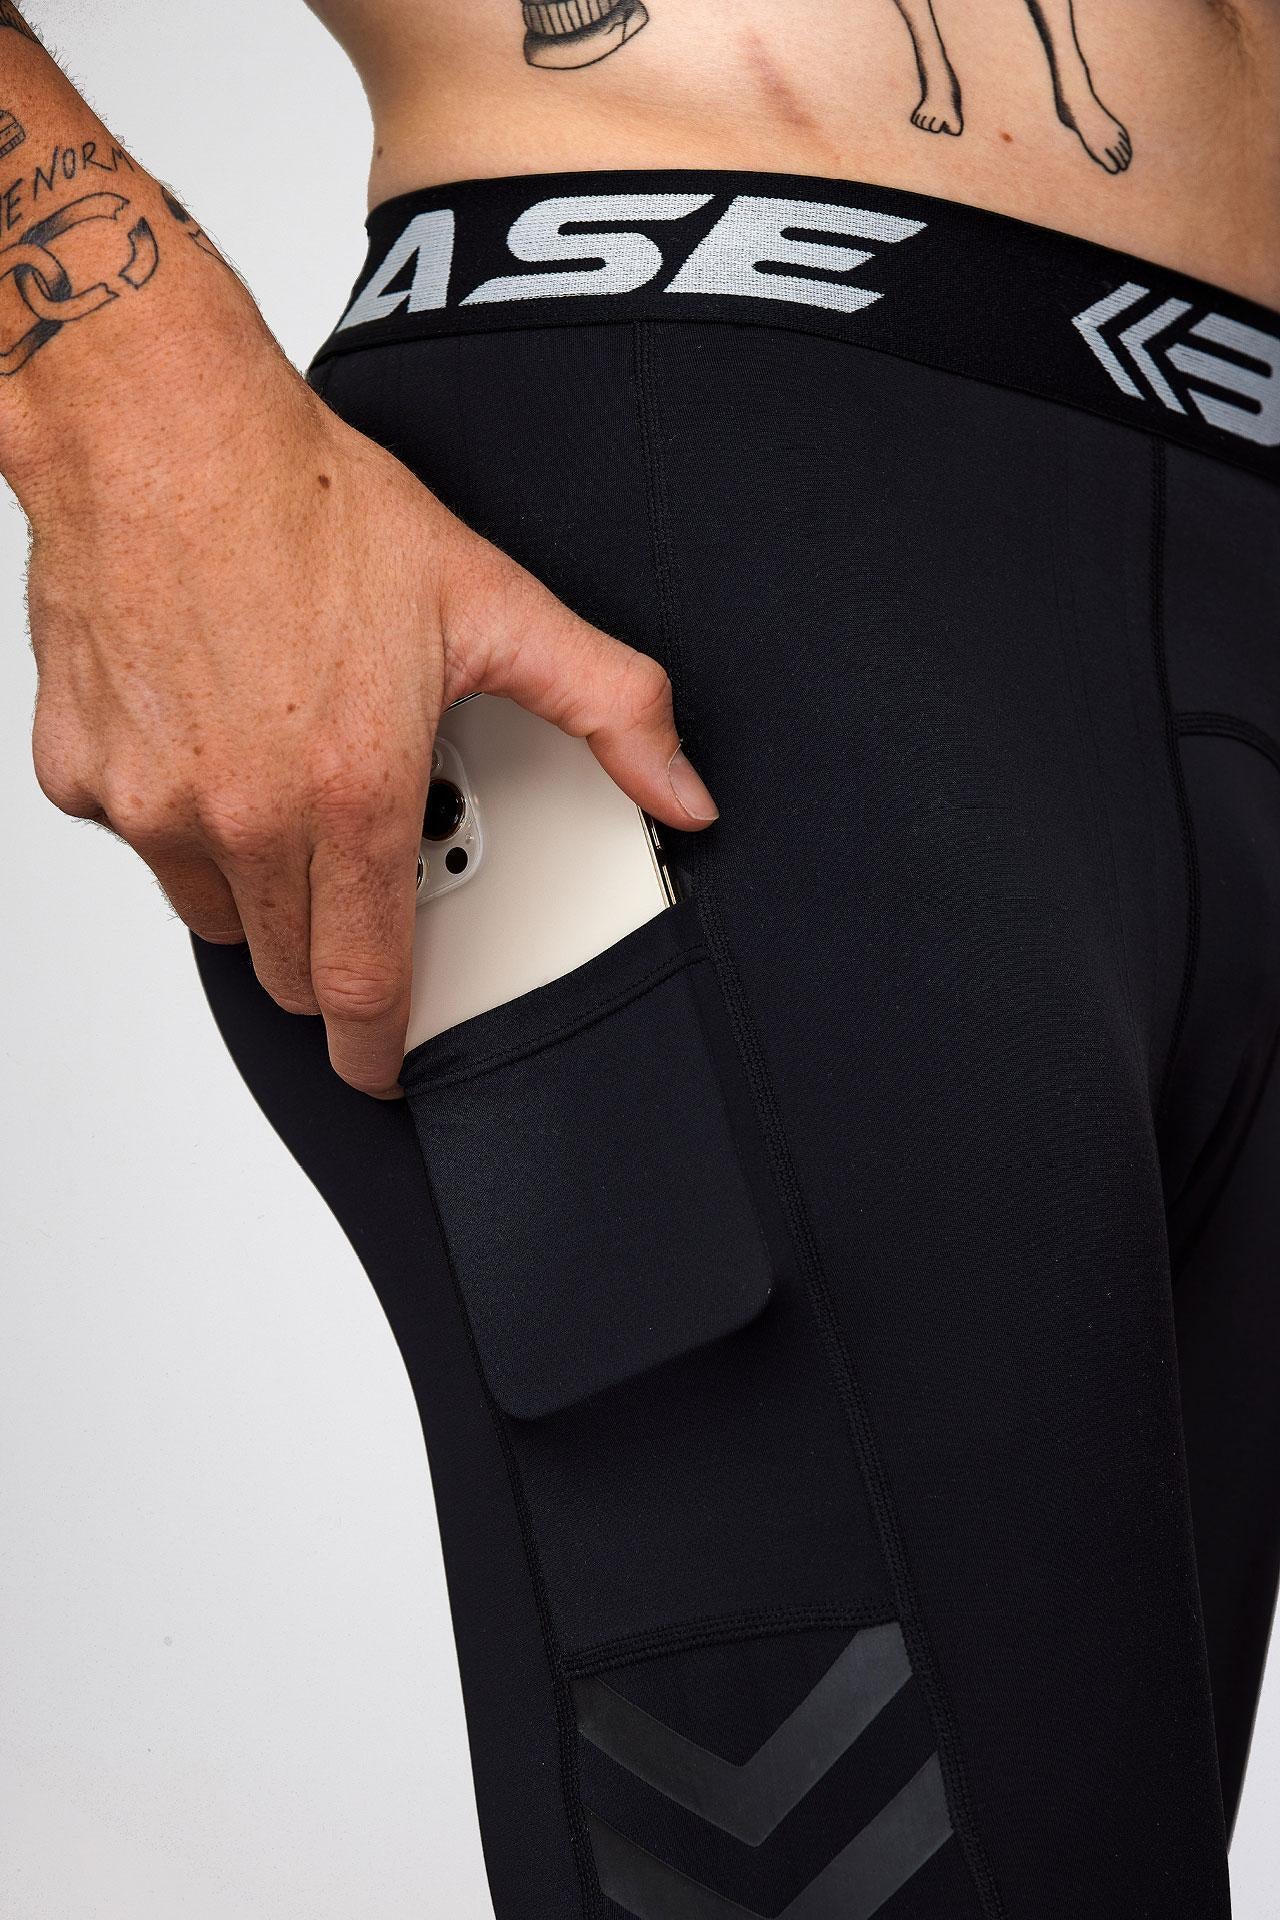 BASE Men's Long Compression Shorts - Black - Adelaide 36ers